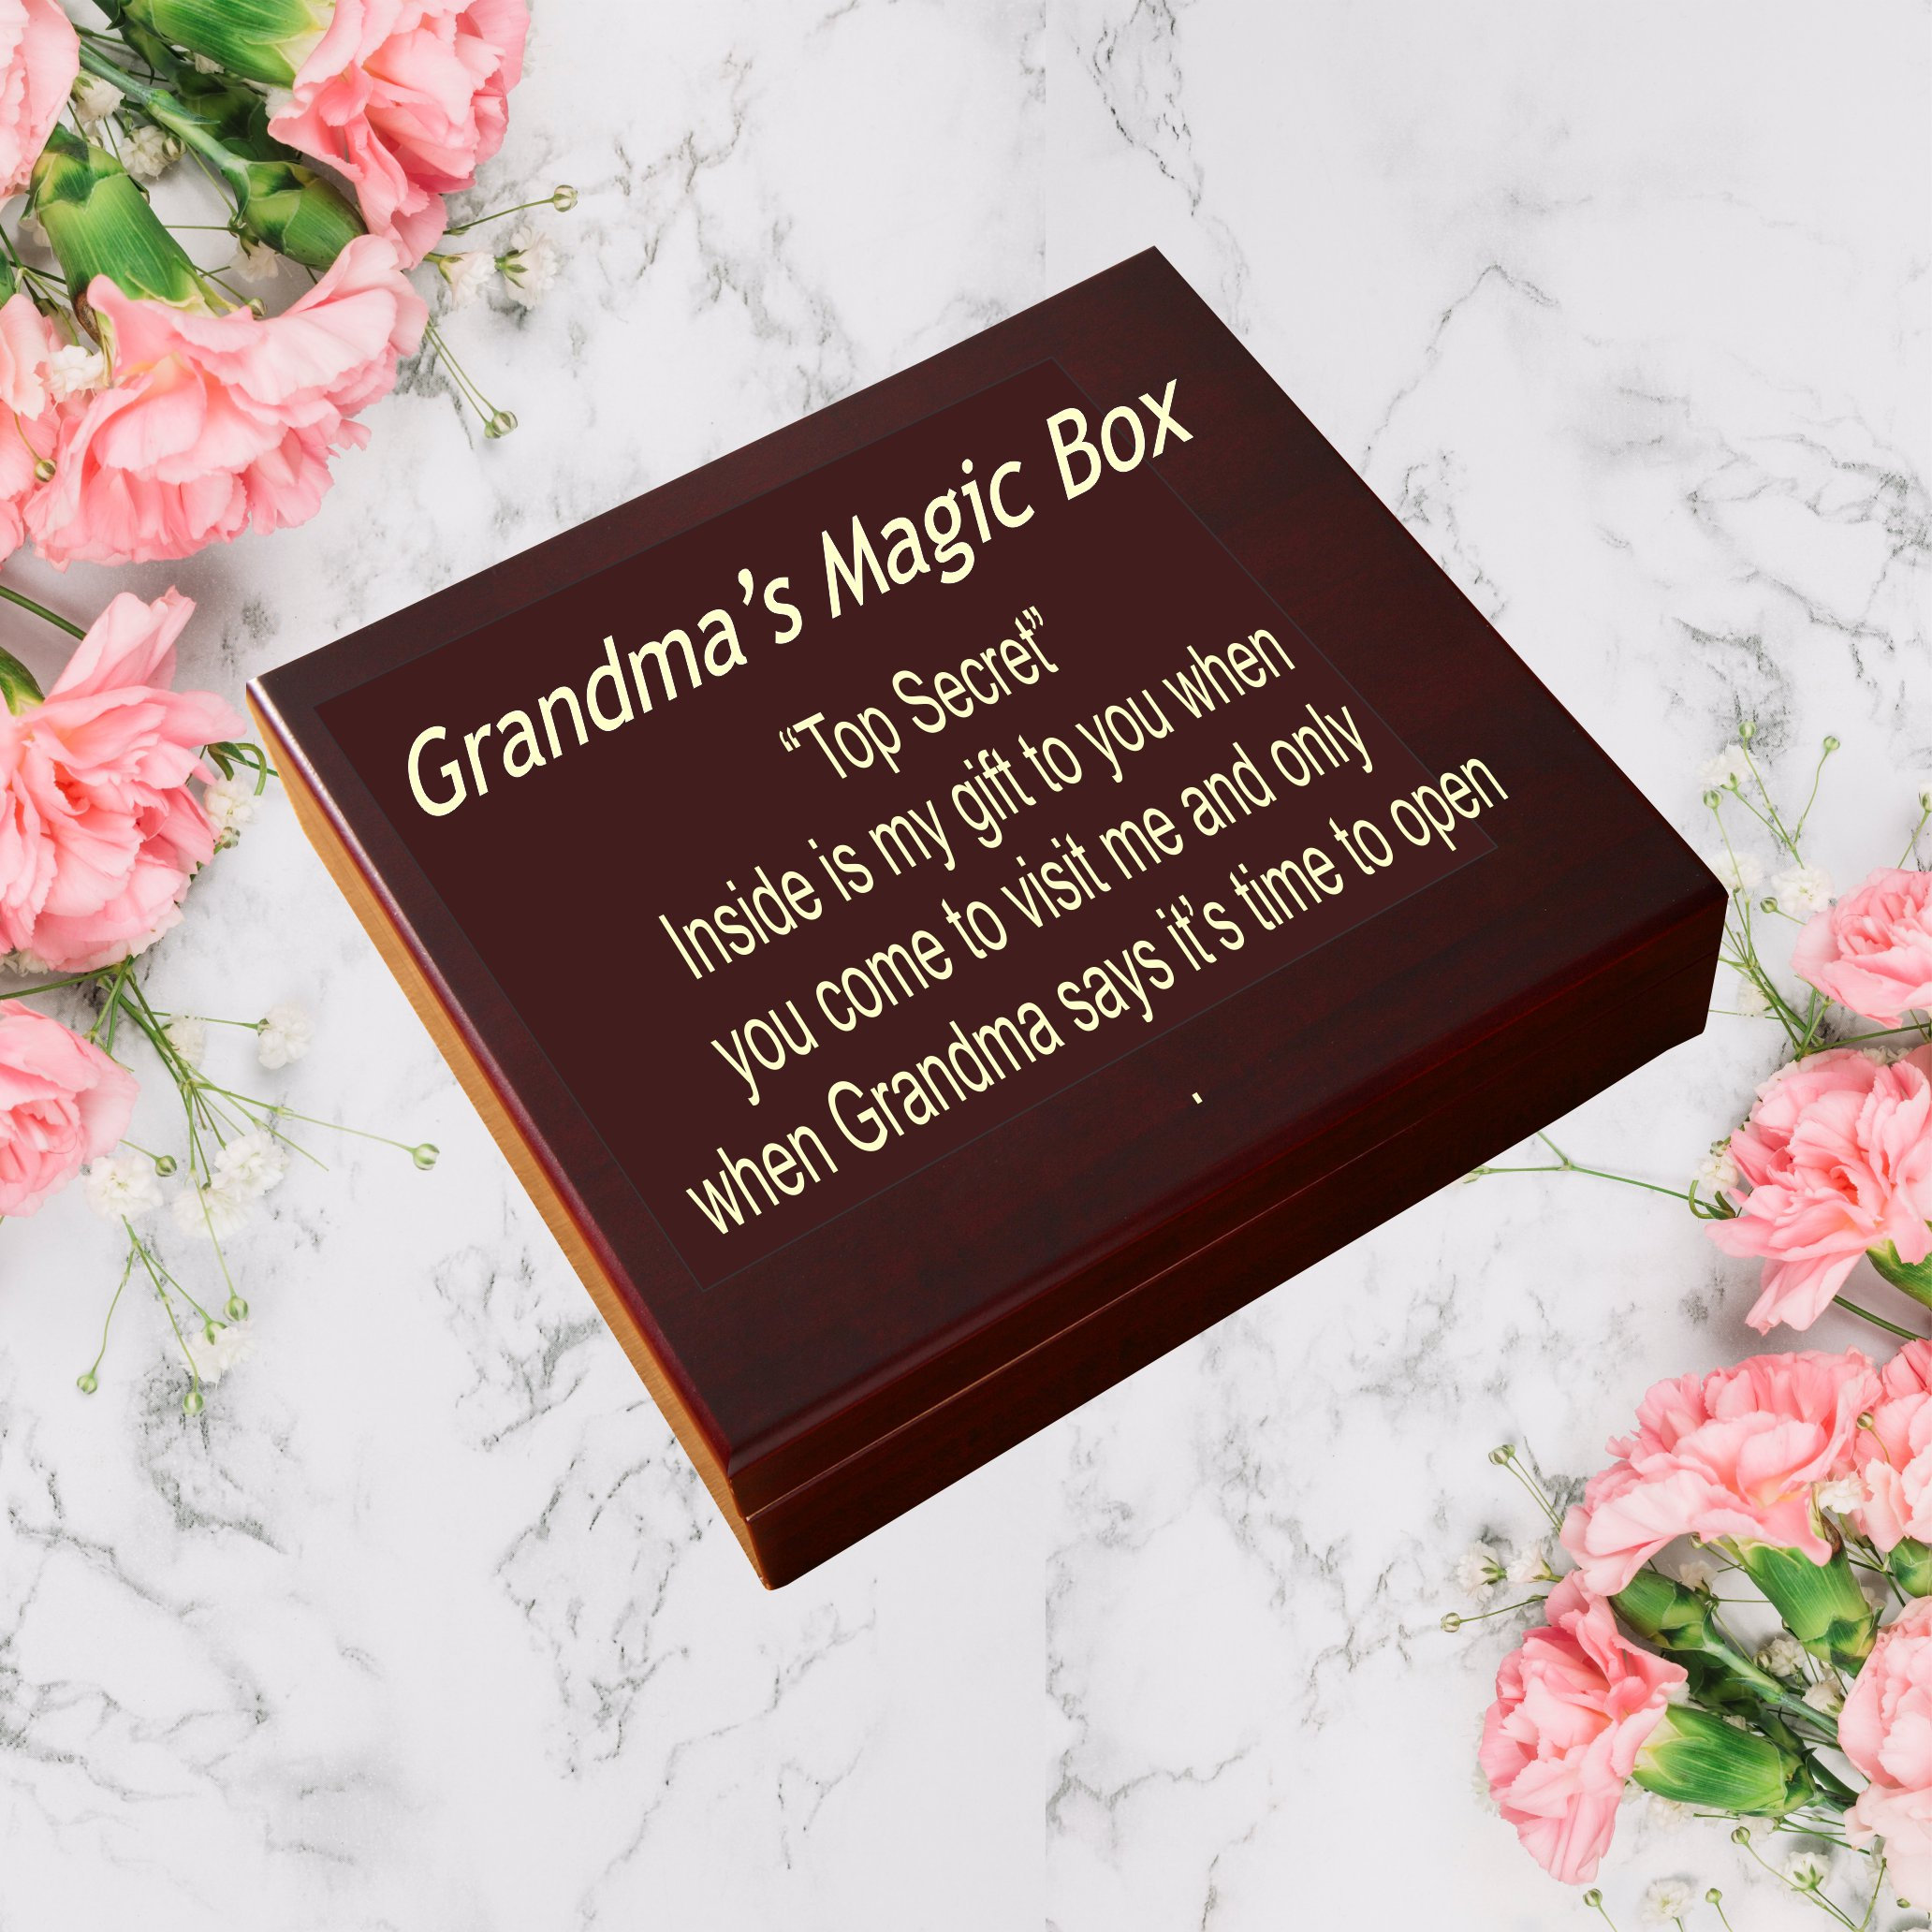 Yaco Store Grandma Gift Box Birthday Gifts for Grandma ,Nana Gifts - Grandma Christmas Gifts from Grandchildren, Great Grandma Gift